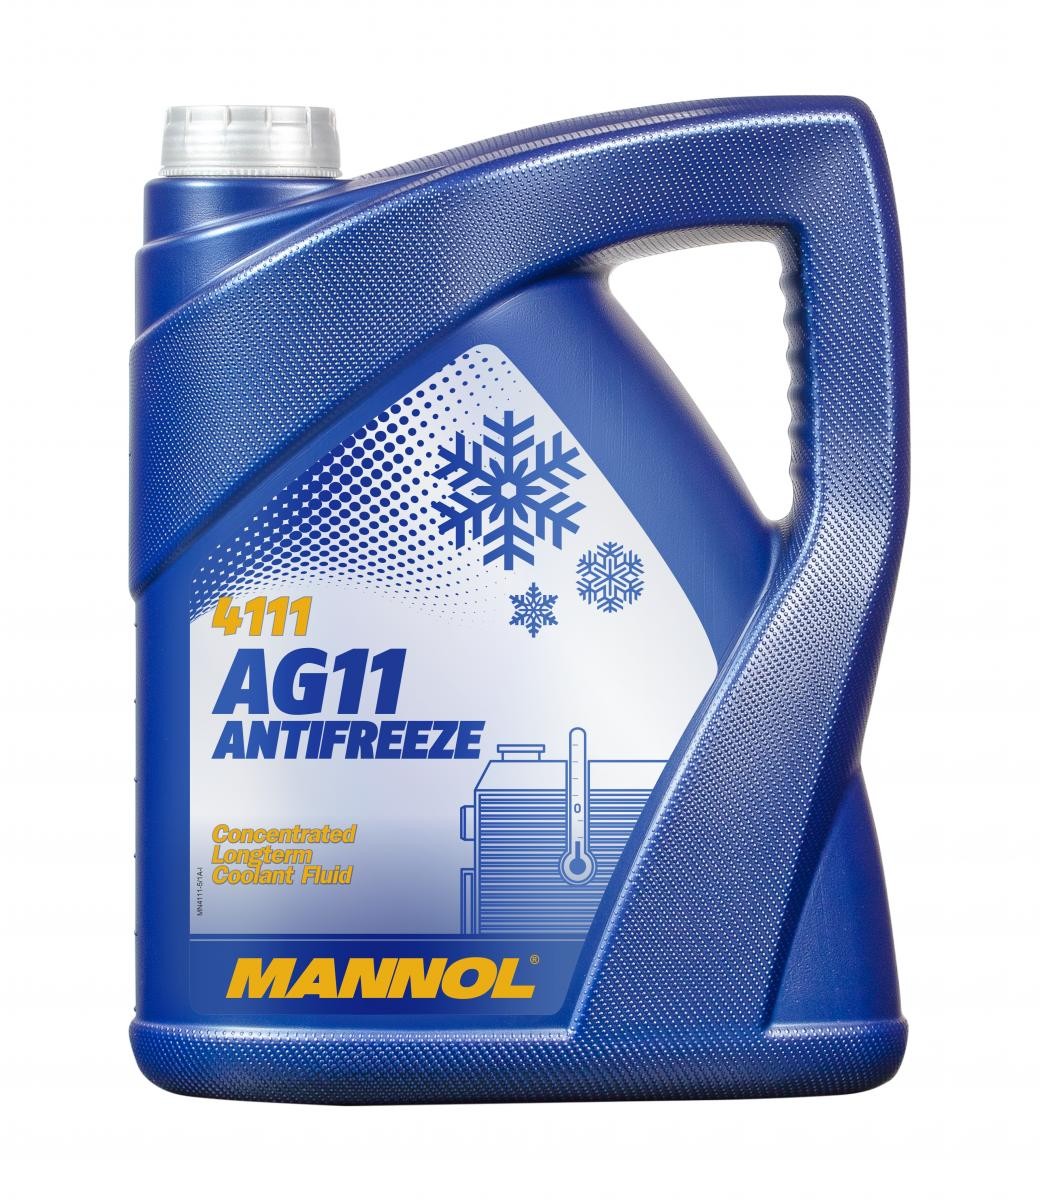 Antifreeze MANNOL MN4111-5 - Audi V8 Cooling system spare parts order